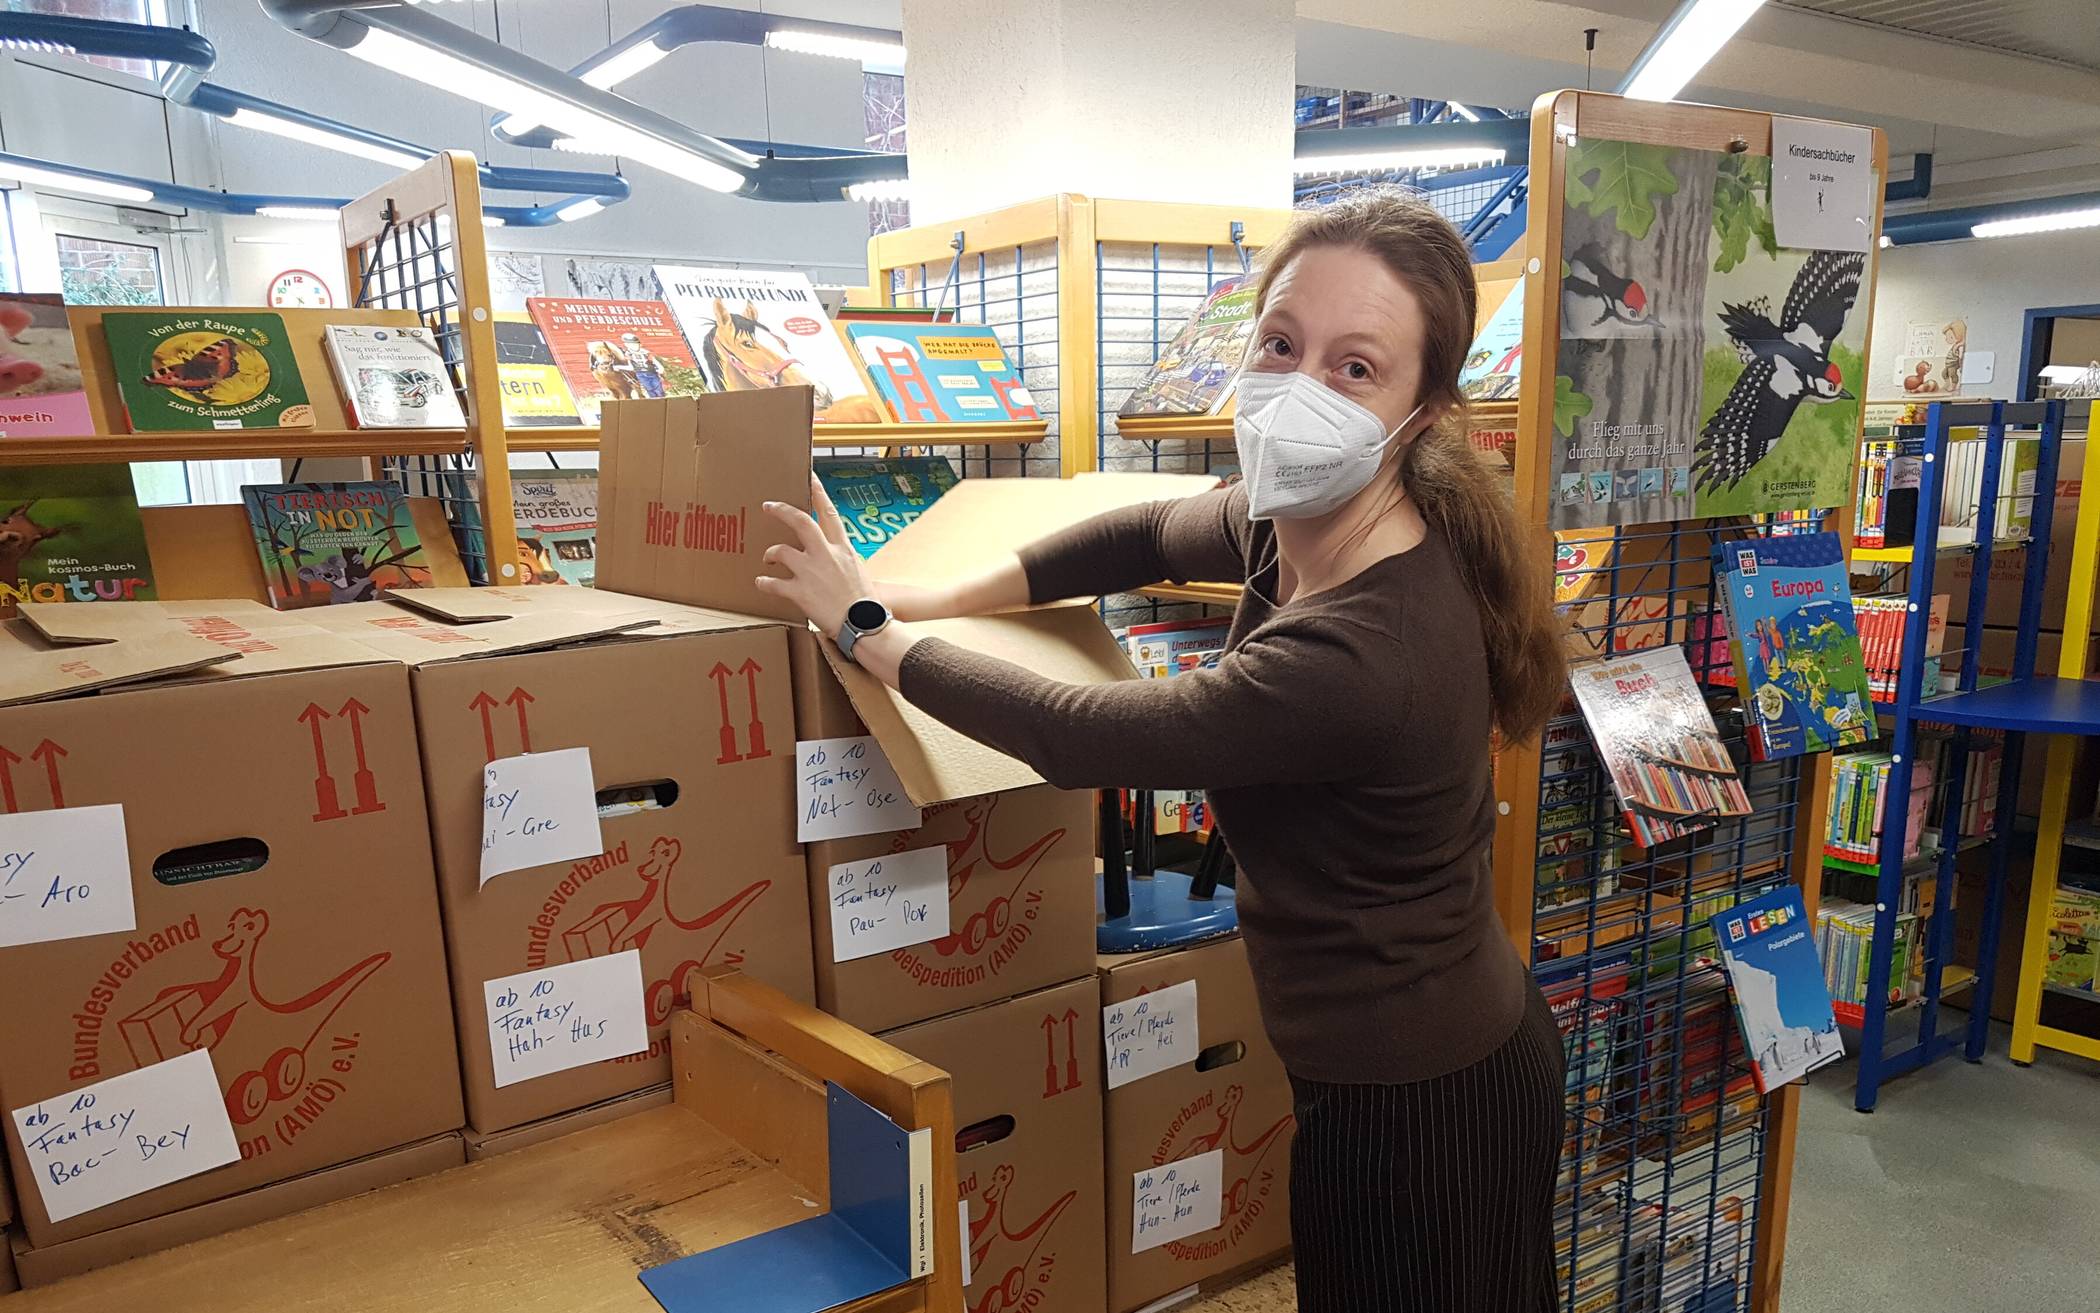  Stadtbücherei-Mitarbeiterin Christin Barthelmie beim Ausräumen der Kartons.  